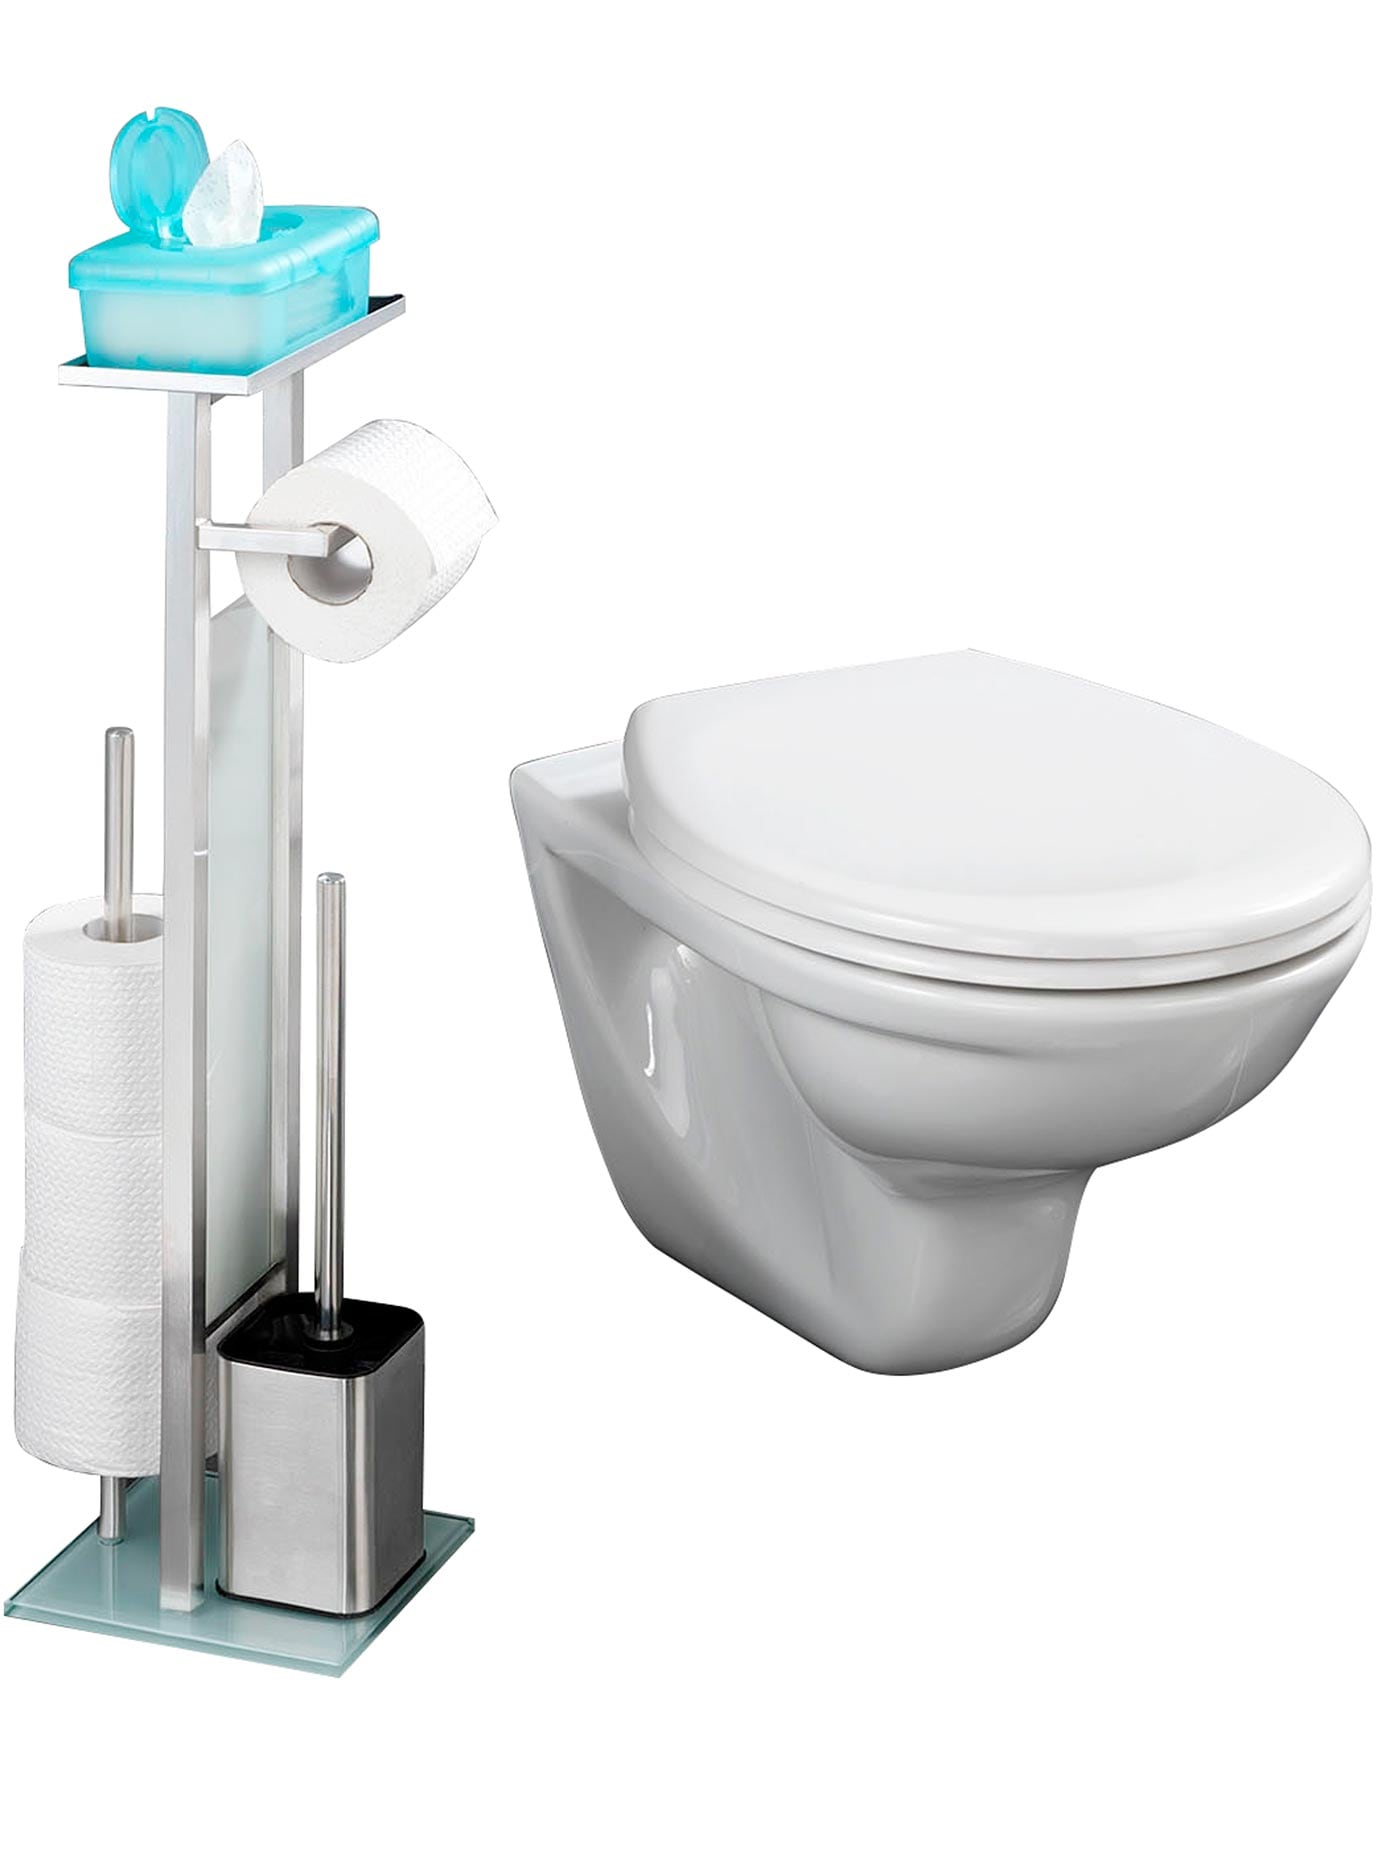 WC-Hygiene-Center online | 3 Jahren XXL Garantie kaufen mit